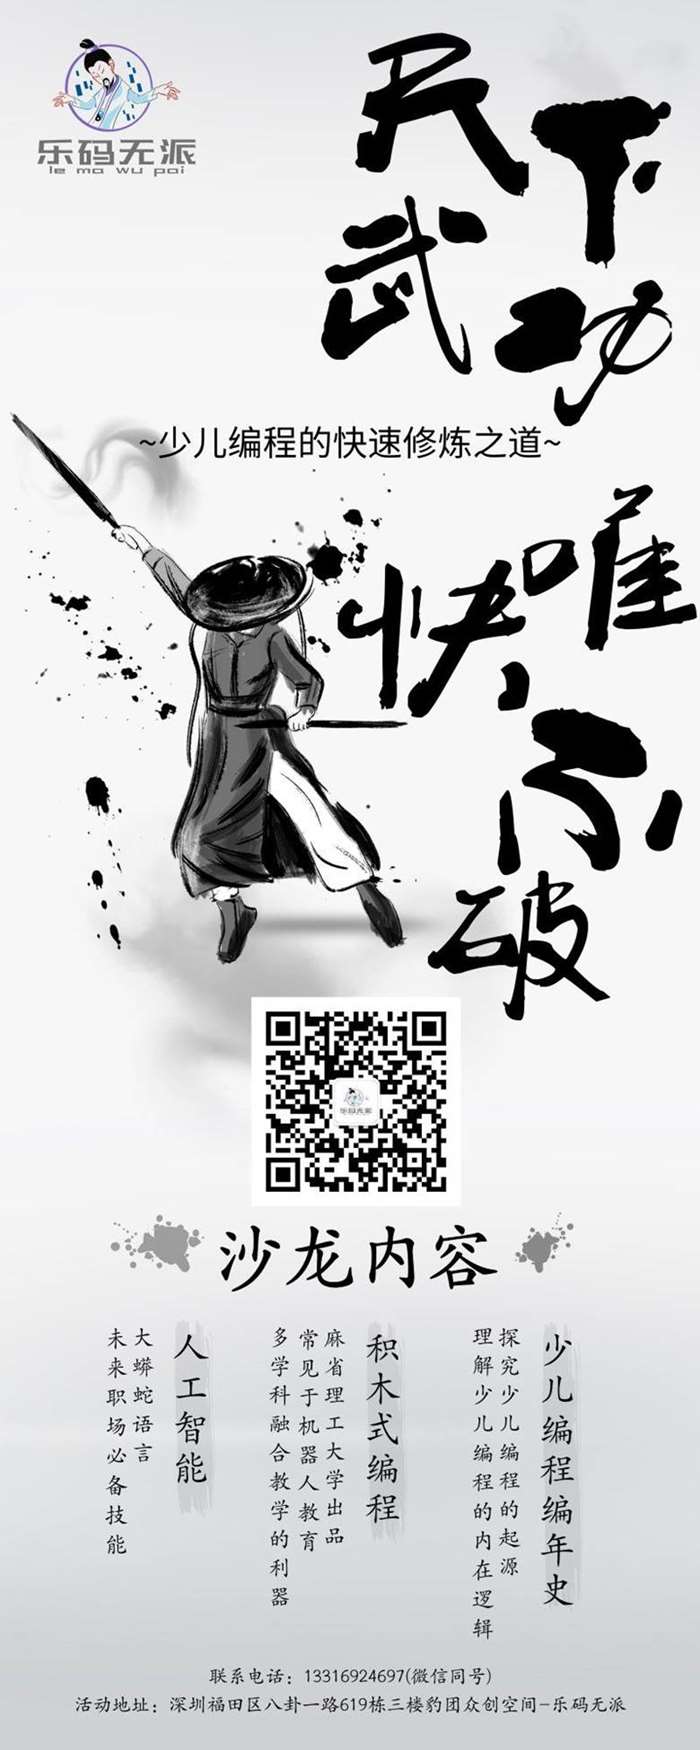 少儿编程的快速修炼之道_长图海报_2019.08.20.png